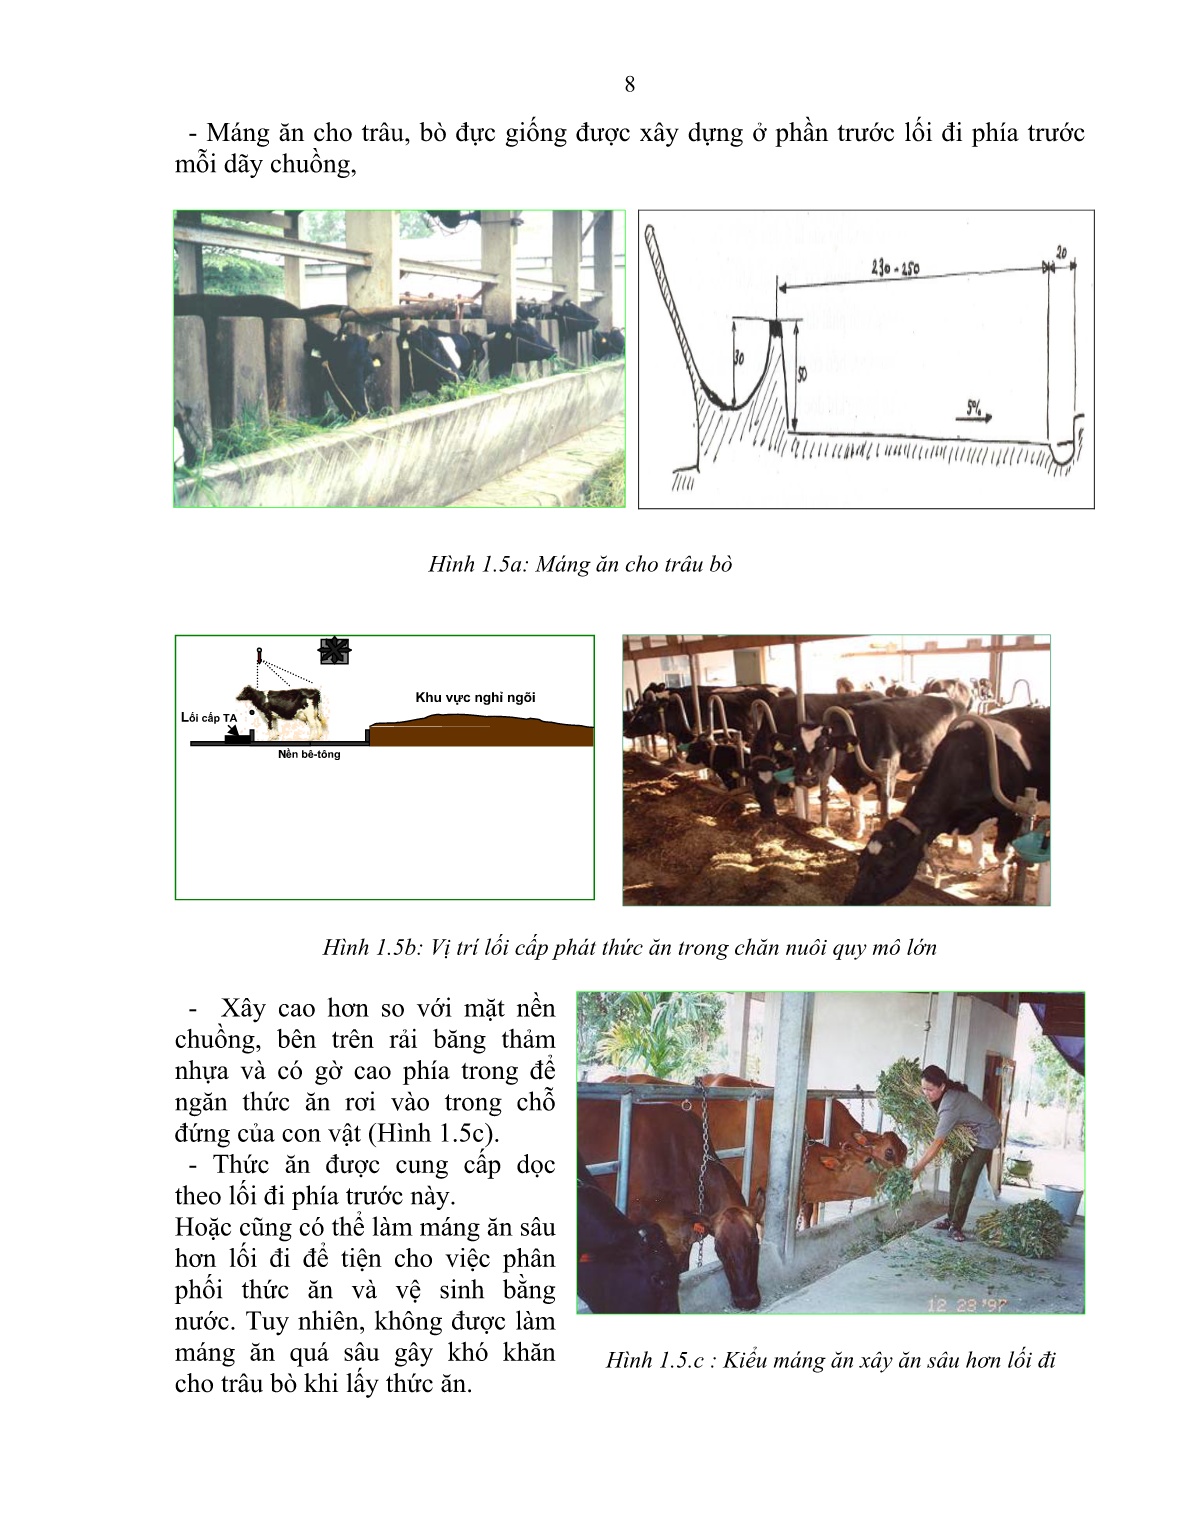 Giáo trình mô đun Nuôi trâu, bò đực giống (Trình độ: Sơ cấp nghề) trang 9